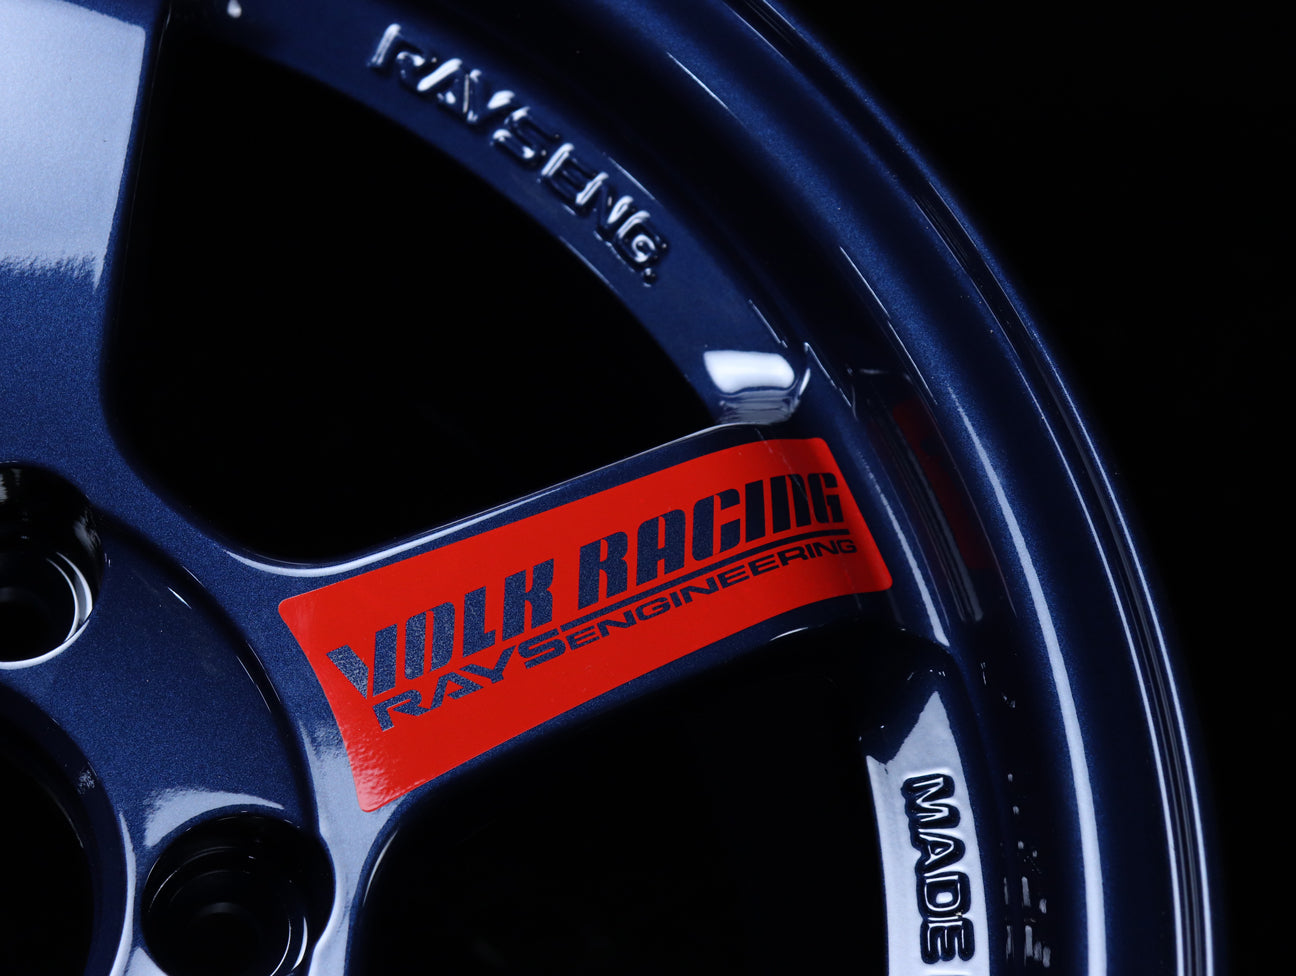 Volk Racing TE37SL Super Lap Edition - Mag Blue 15x8.0 / 4x100 / +35